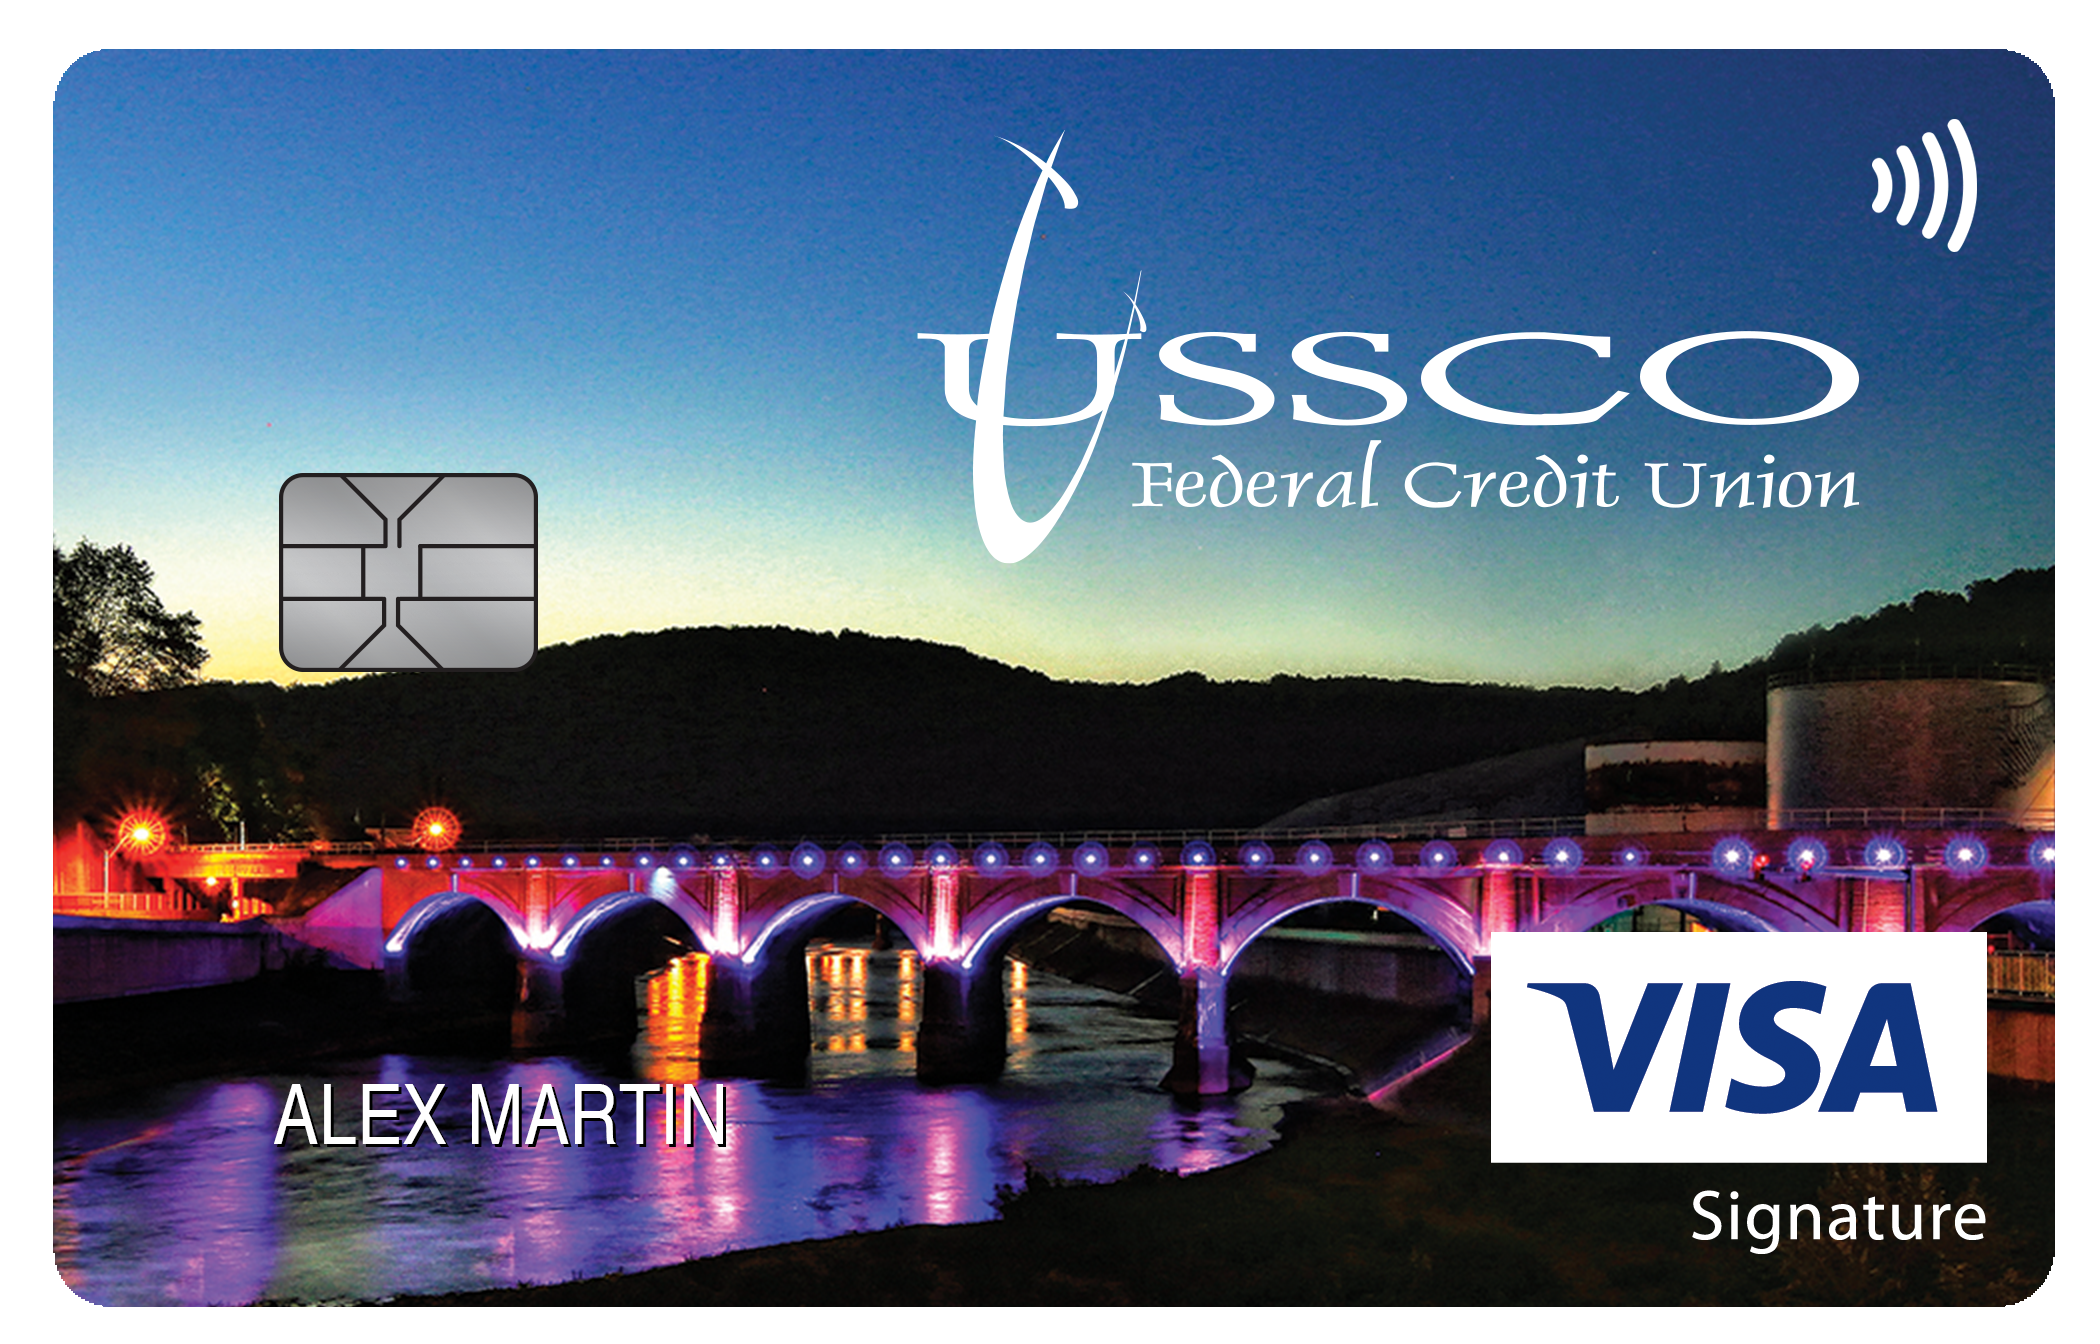 USSCO Federal Credit Union Travel Rewards+ Card